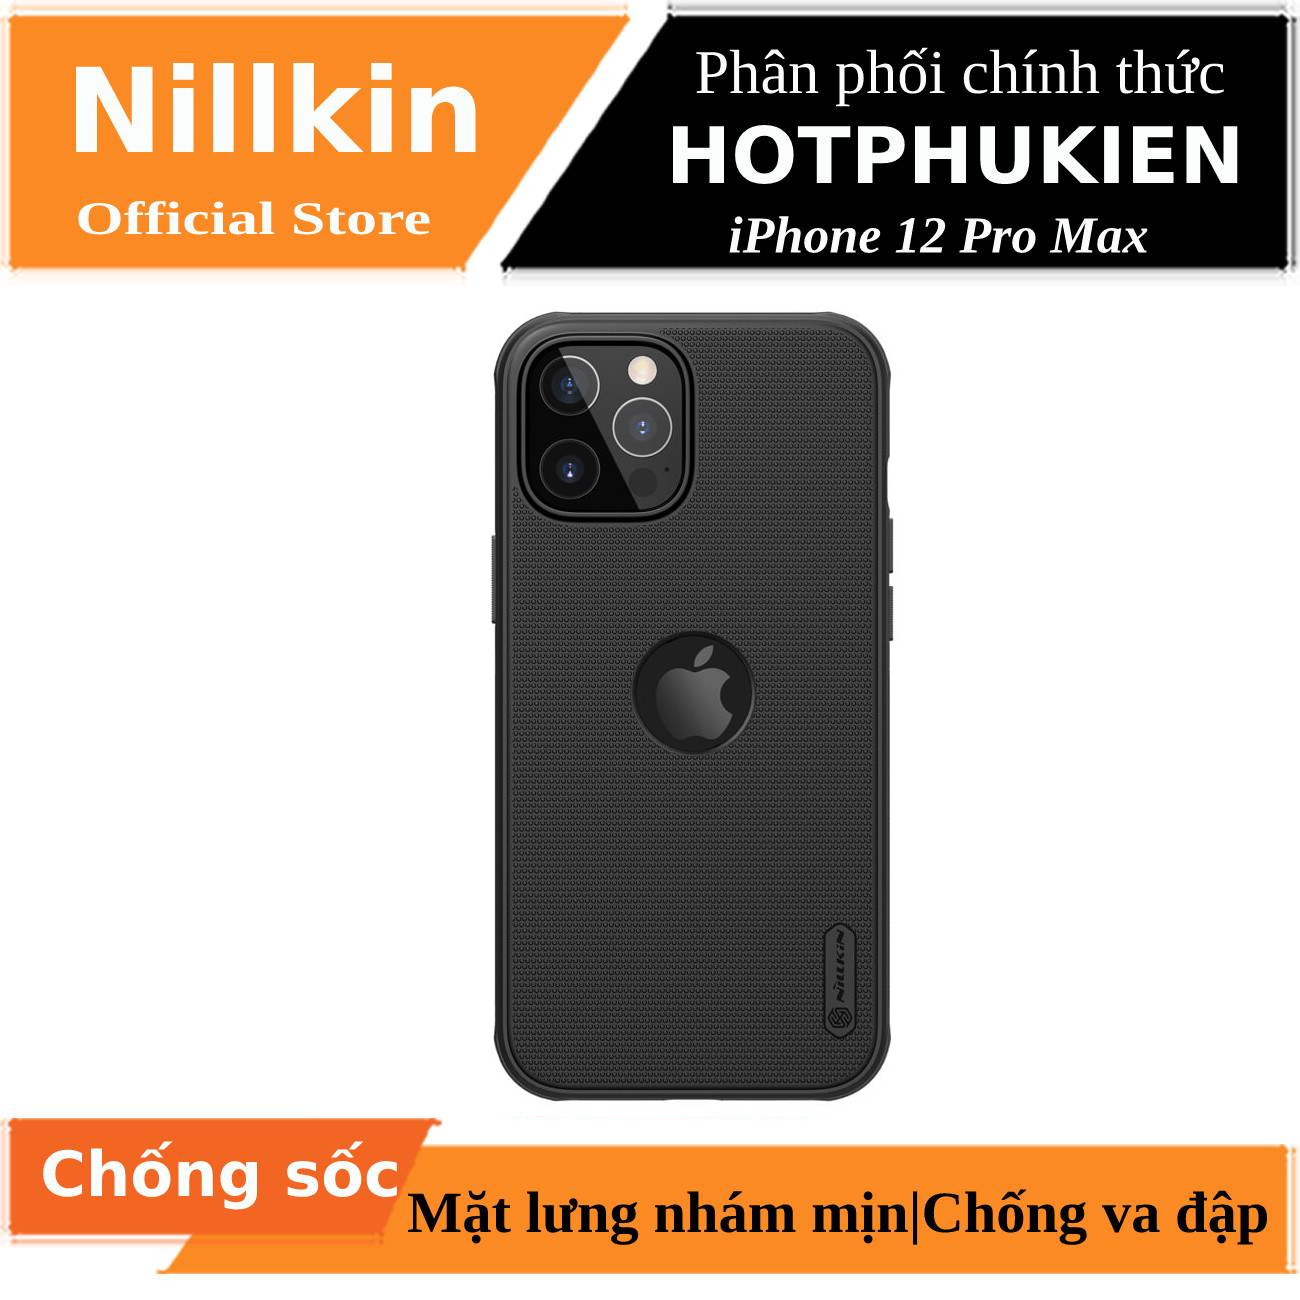 Ốp lưng iPhone 12 Pro Max 6.7 inch chống sốc mặt lưng nhám (hở logo) hiệu Nillkin Super Frosted Shield Pro